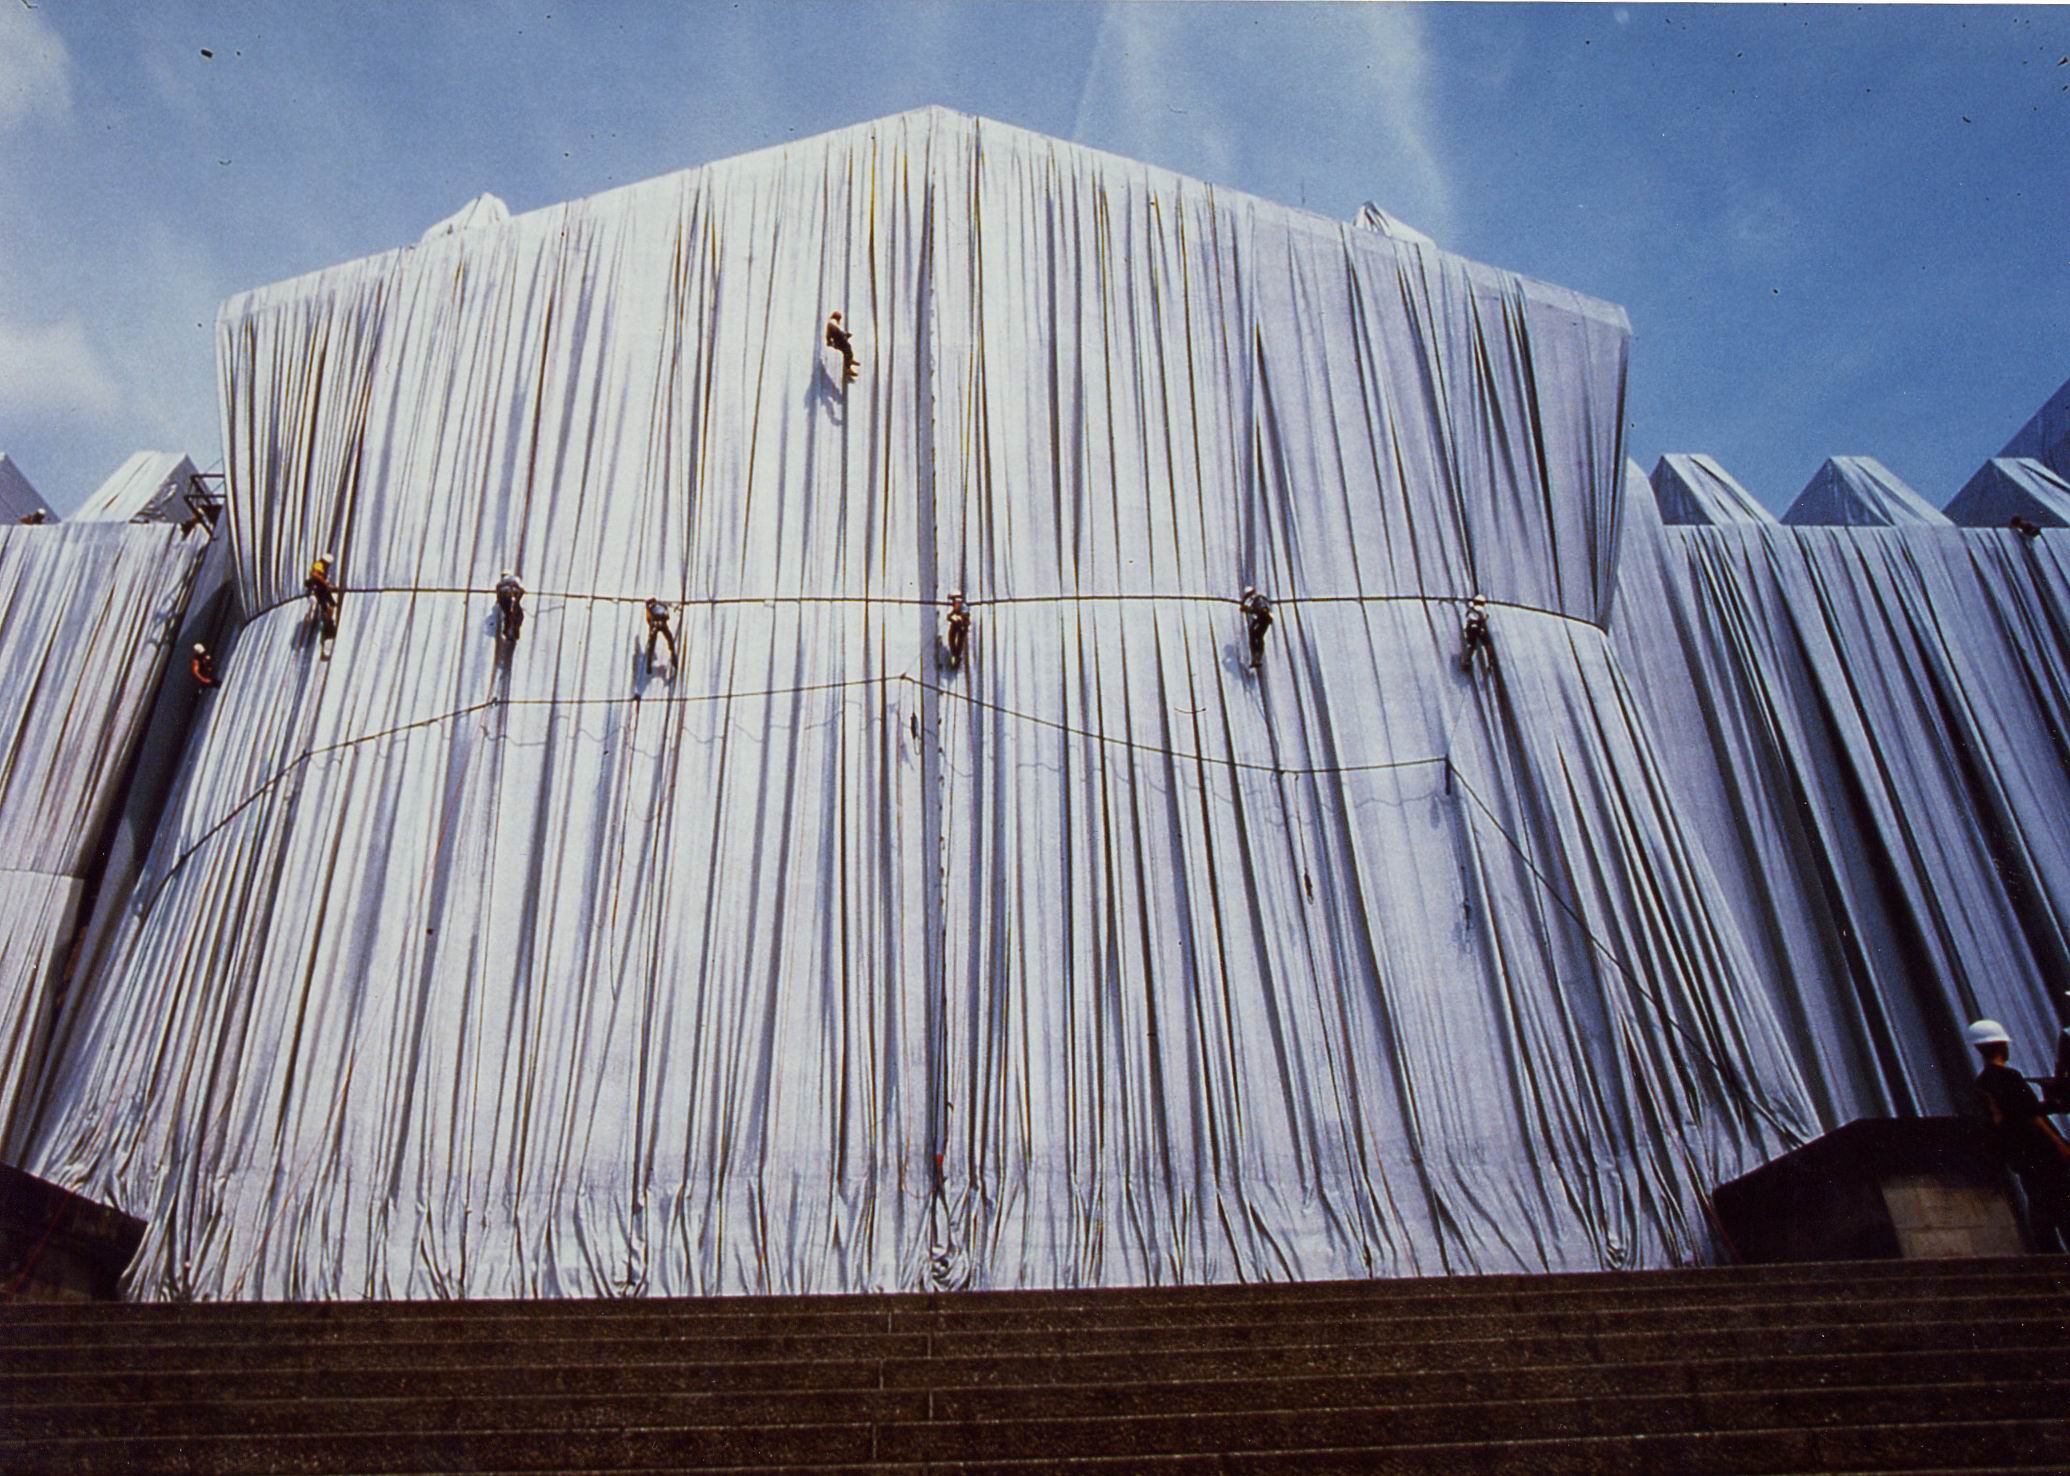 Ein Industriekletterer von ZITRAS beim Klettern an einer mit weißem Stoff verhüllten Gebäudestruktur, möglicherweise am Reichstag, um die Expertise des Unternehmens in Höhenarbeit zu demonstrieren